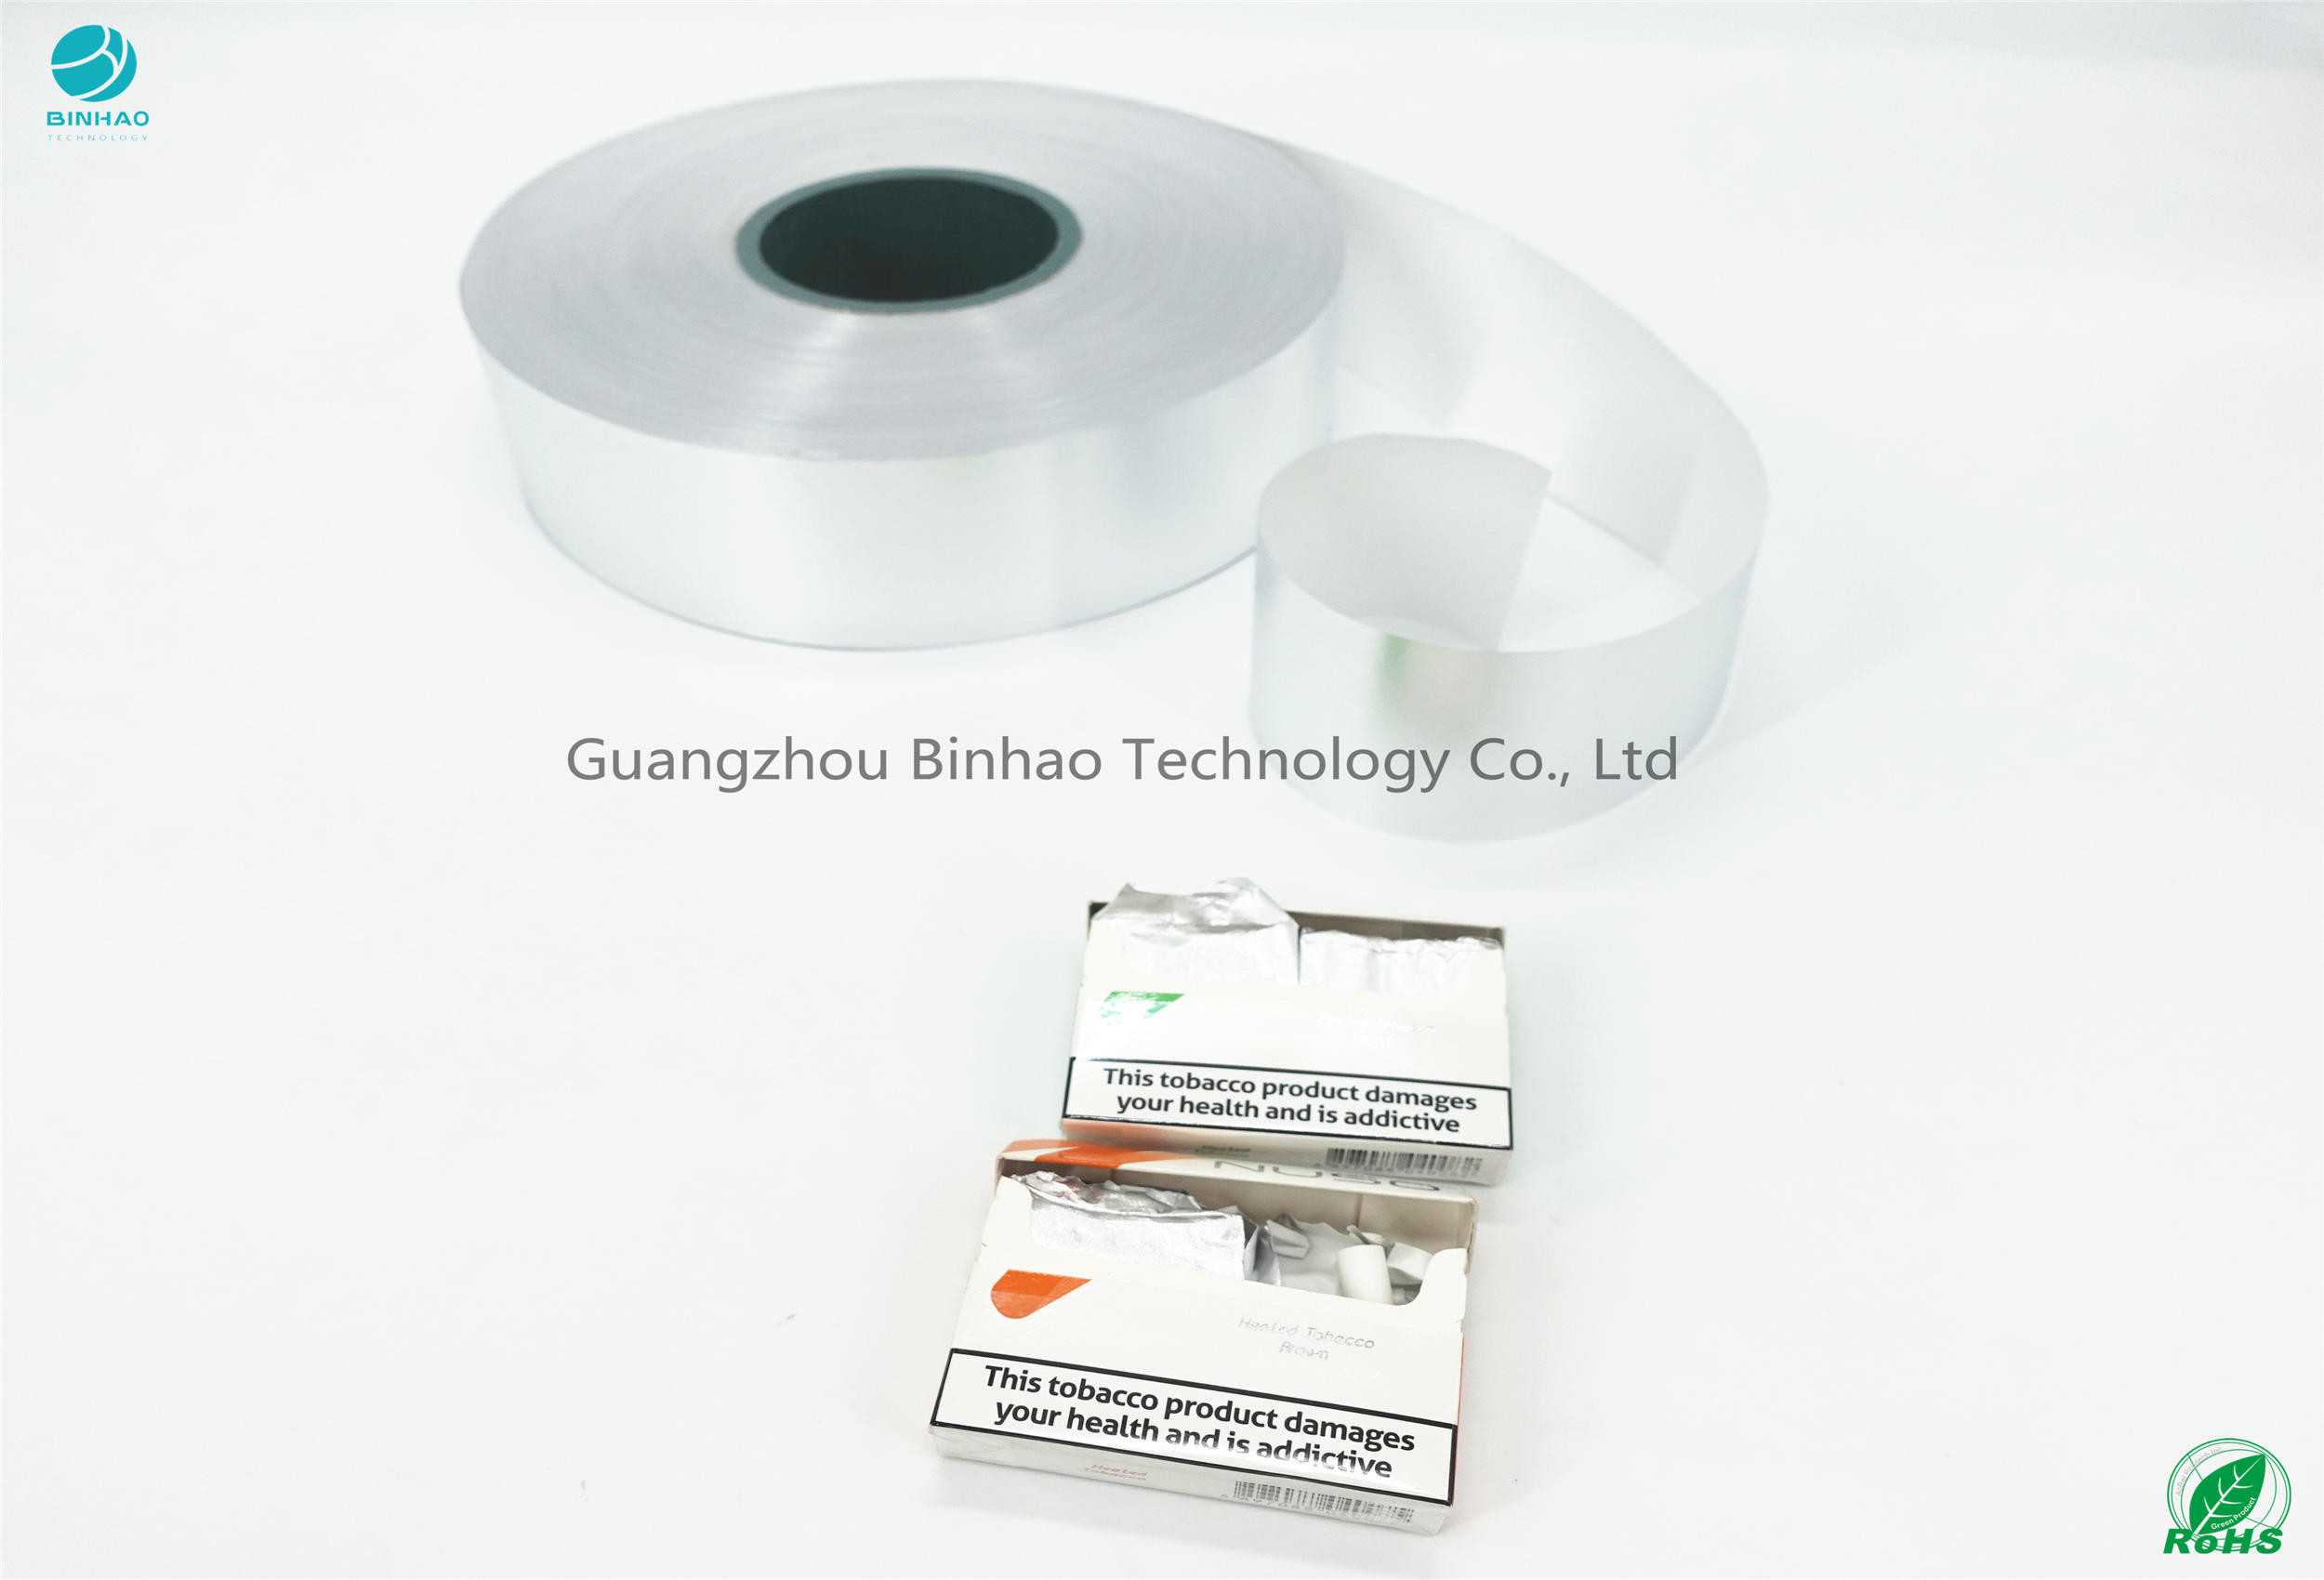 Os materiais de prata do pacote do E-cigarro do papel HNB da folha de alumínio ligam 8011